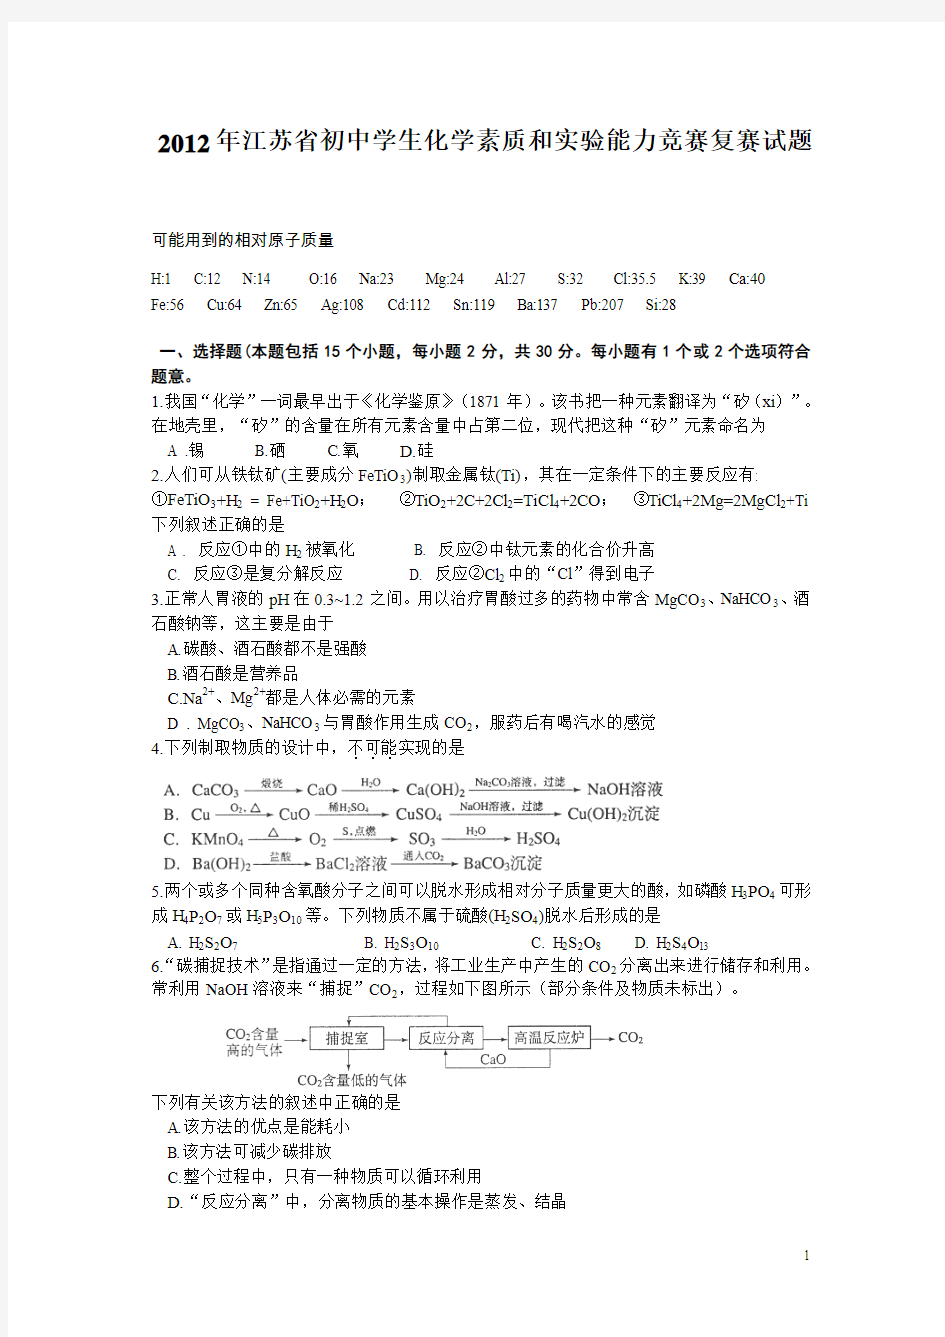 2012年江苏省初中学生化学素质和实验能力竞赛复赛试题及答案(WORD)